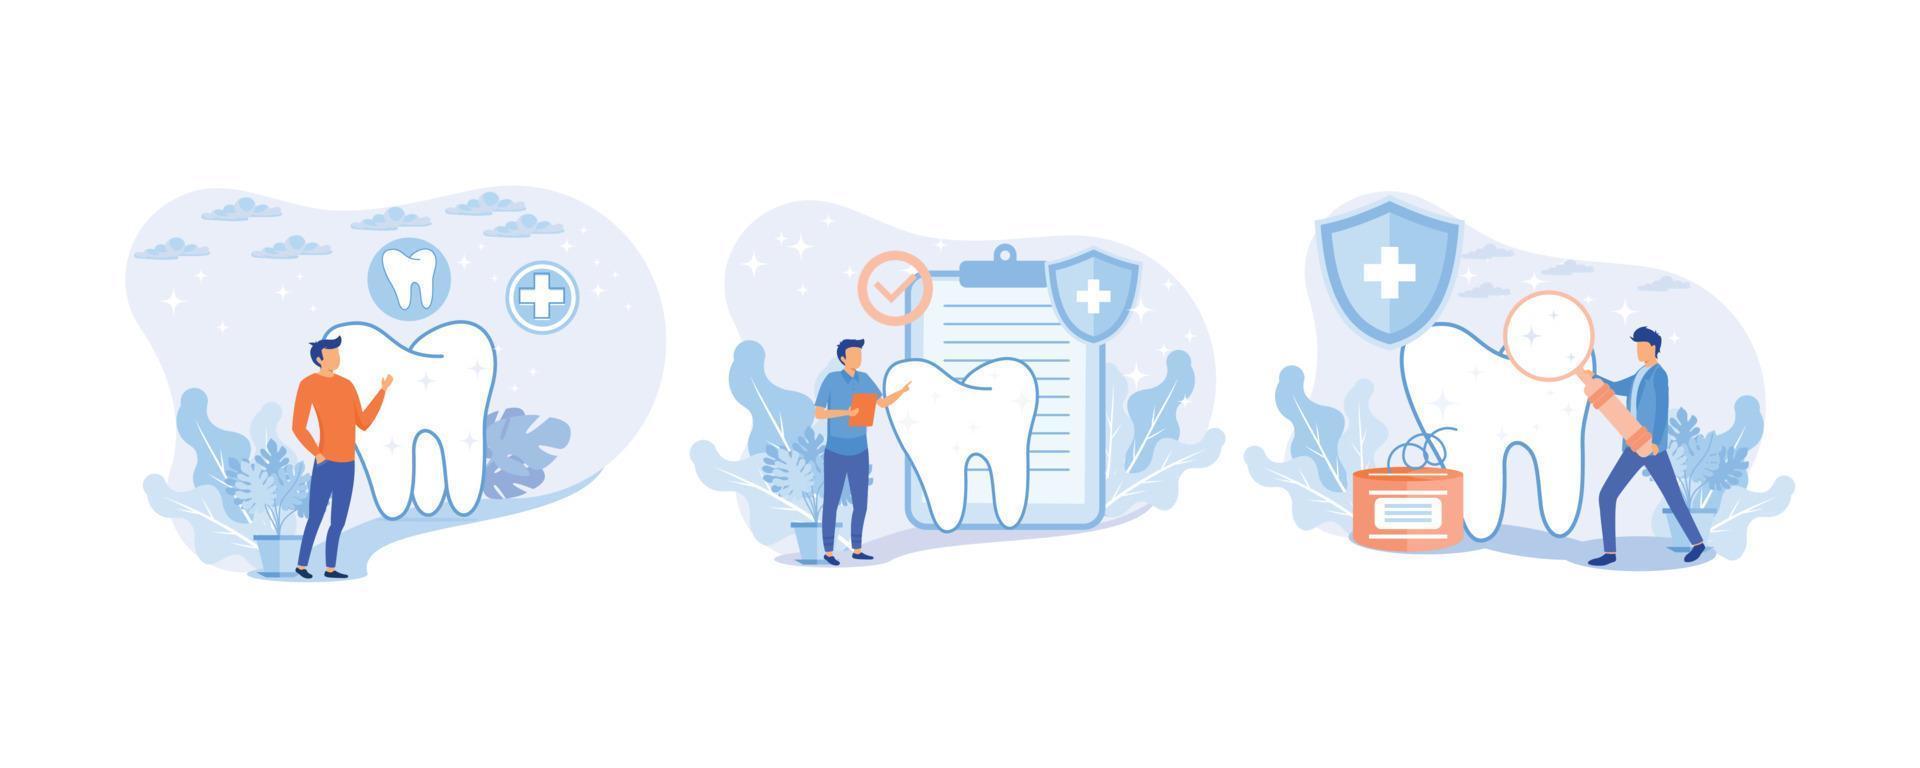 zahnpflege-illustrationssatz. zahnarzt und medizinisches personal, das sich um zähne kümmert. professionelle Zahnreinigung, Behandlung und Mundhygiene. gesundheitszahnversicherungskonzept vektor